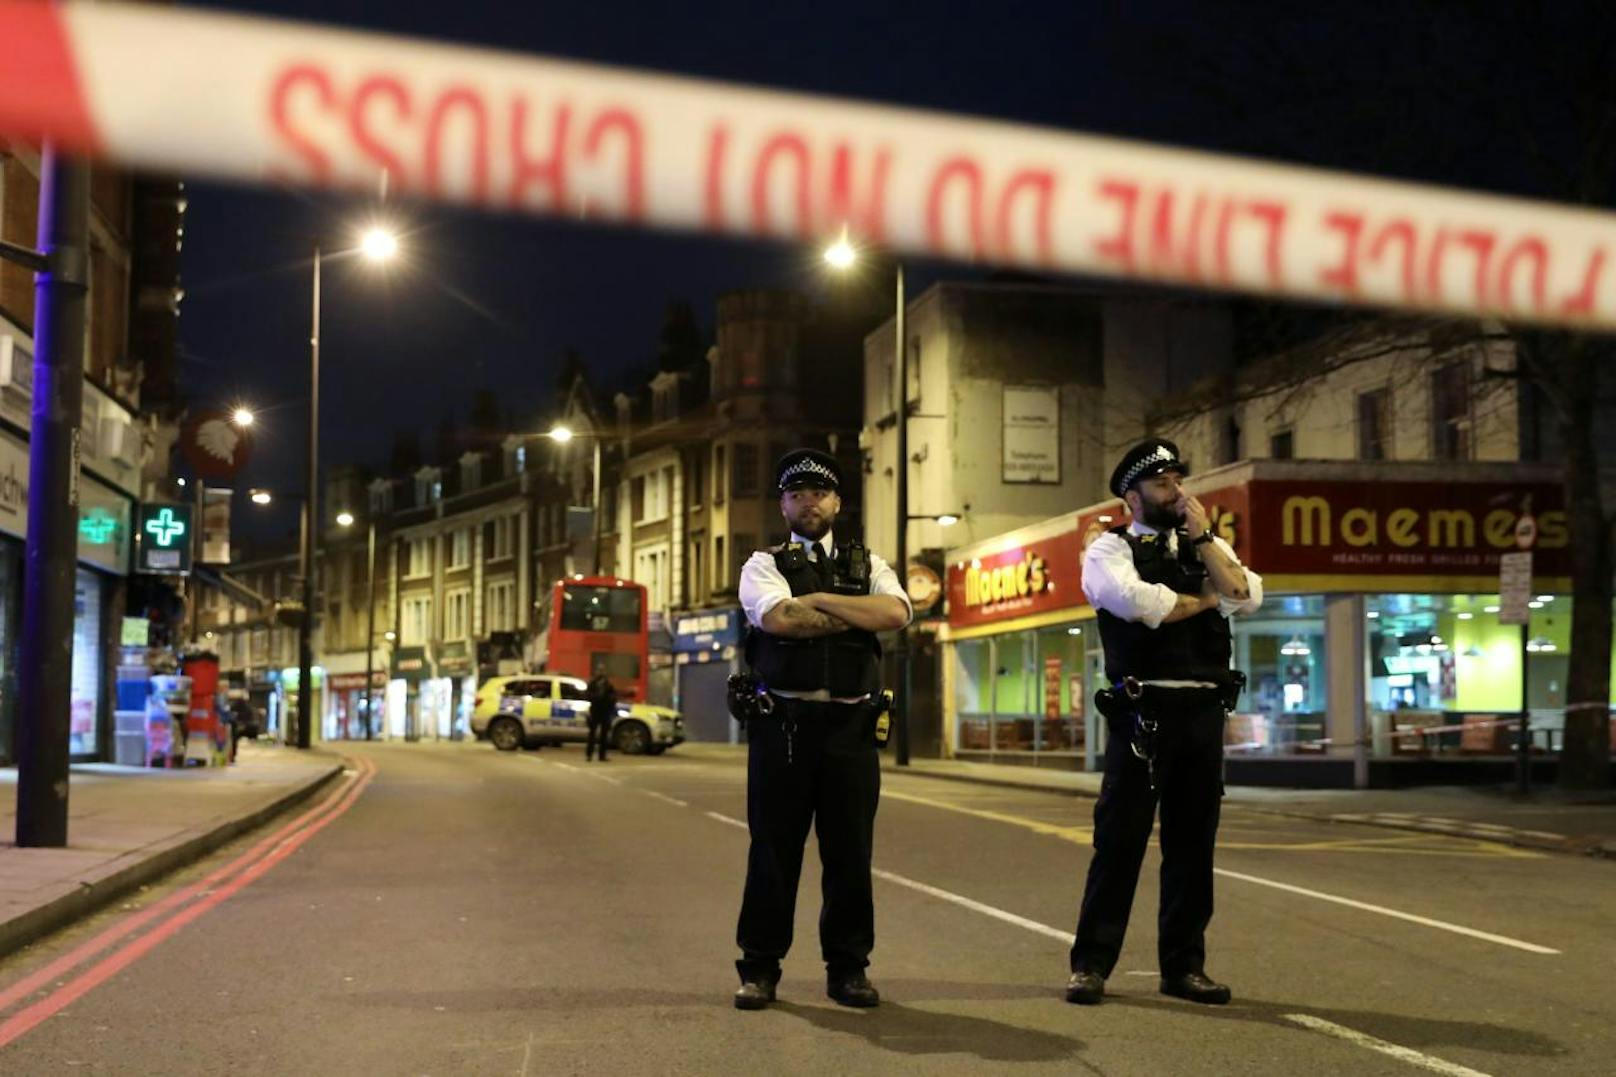 Ein 19-Jähriger hat am Sonntag (2. Februar 2020) in London auf mehrere Menschen eingestochen. Die Polizei geht von einem terroristischen Hintergrund aus.